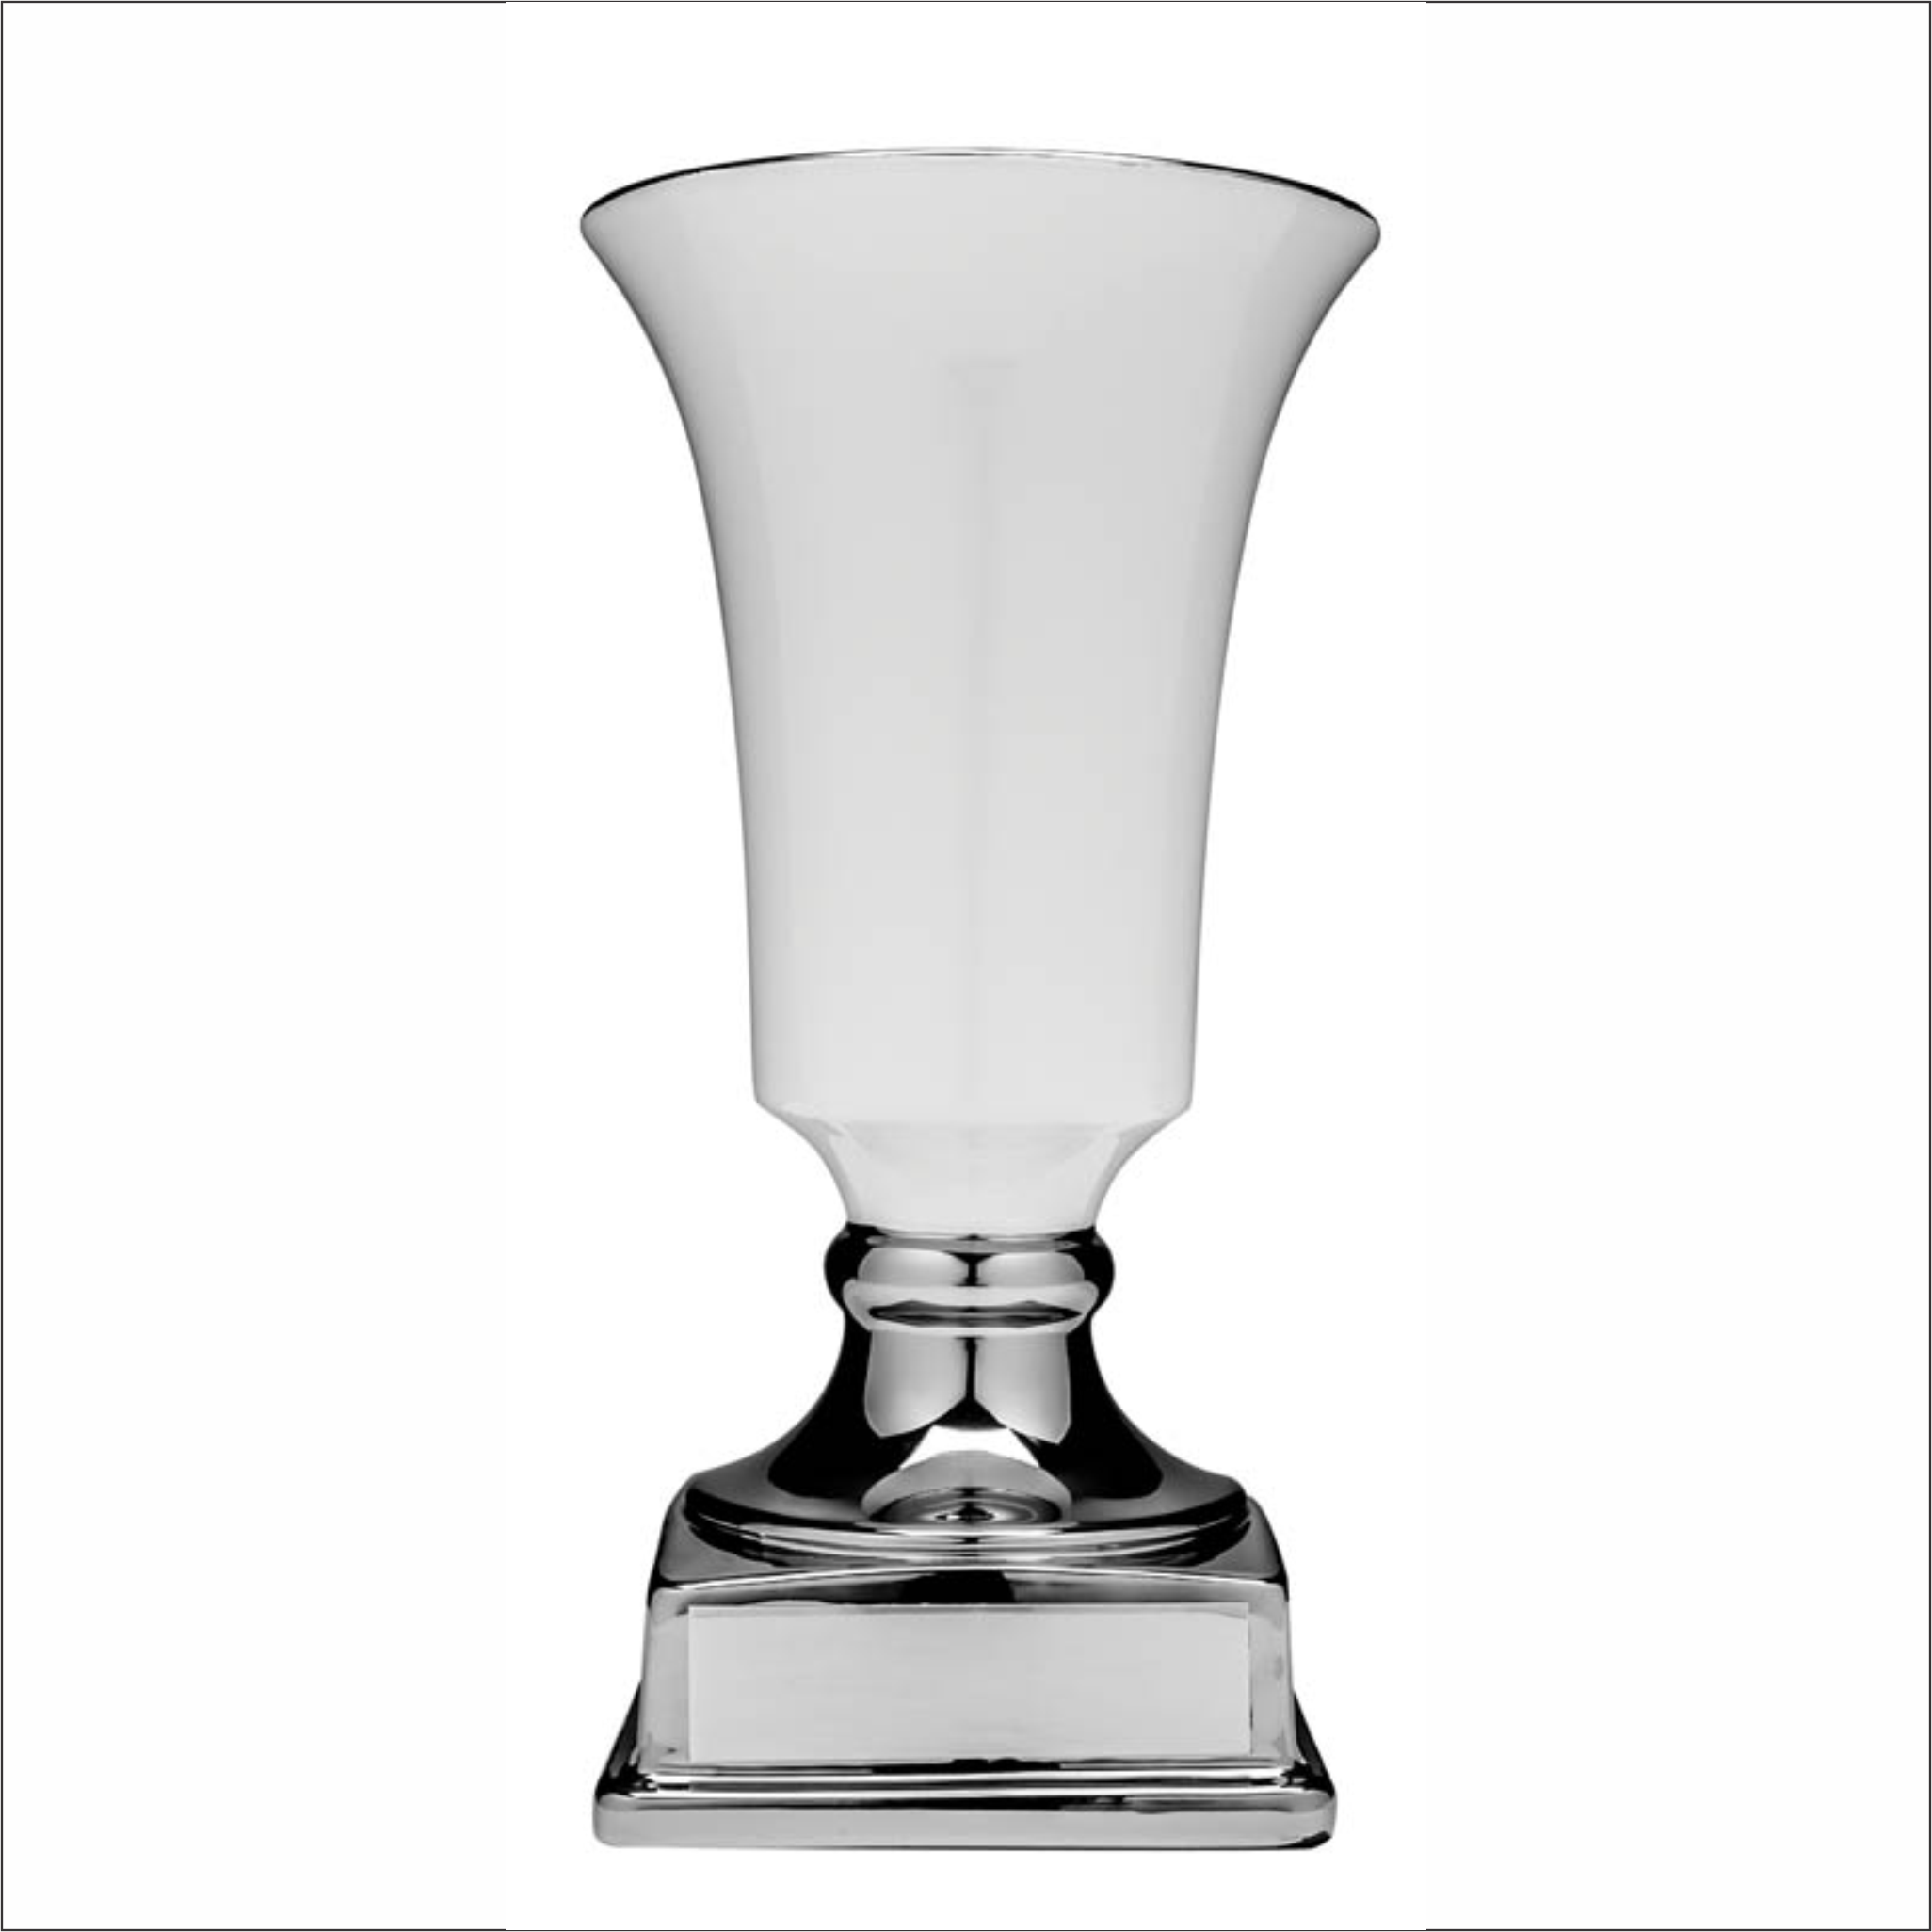 Ceramic Cup - White/Silver - Contempo series